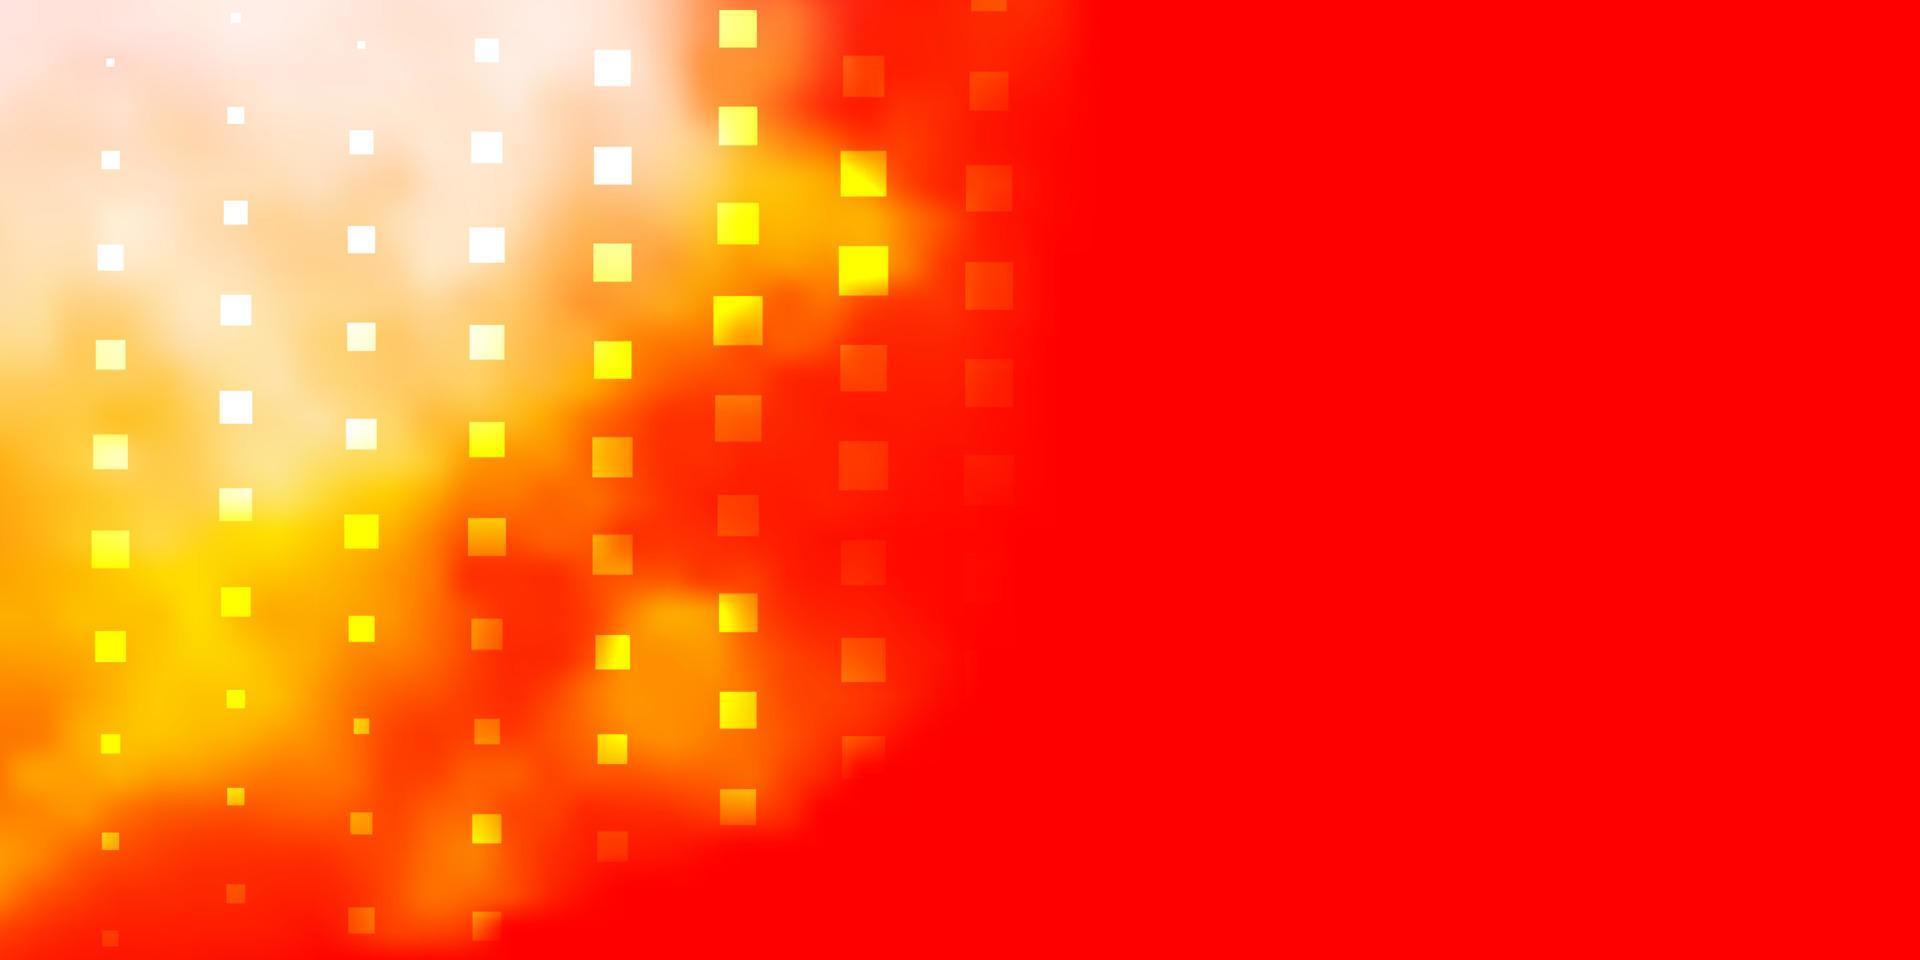 modèle vectoriel rouge et jaune clair dans un style carré.